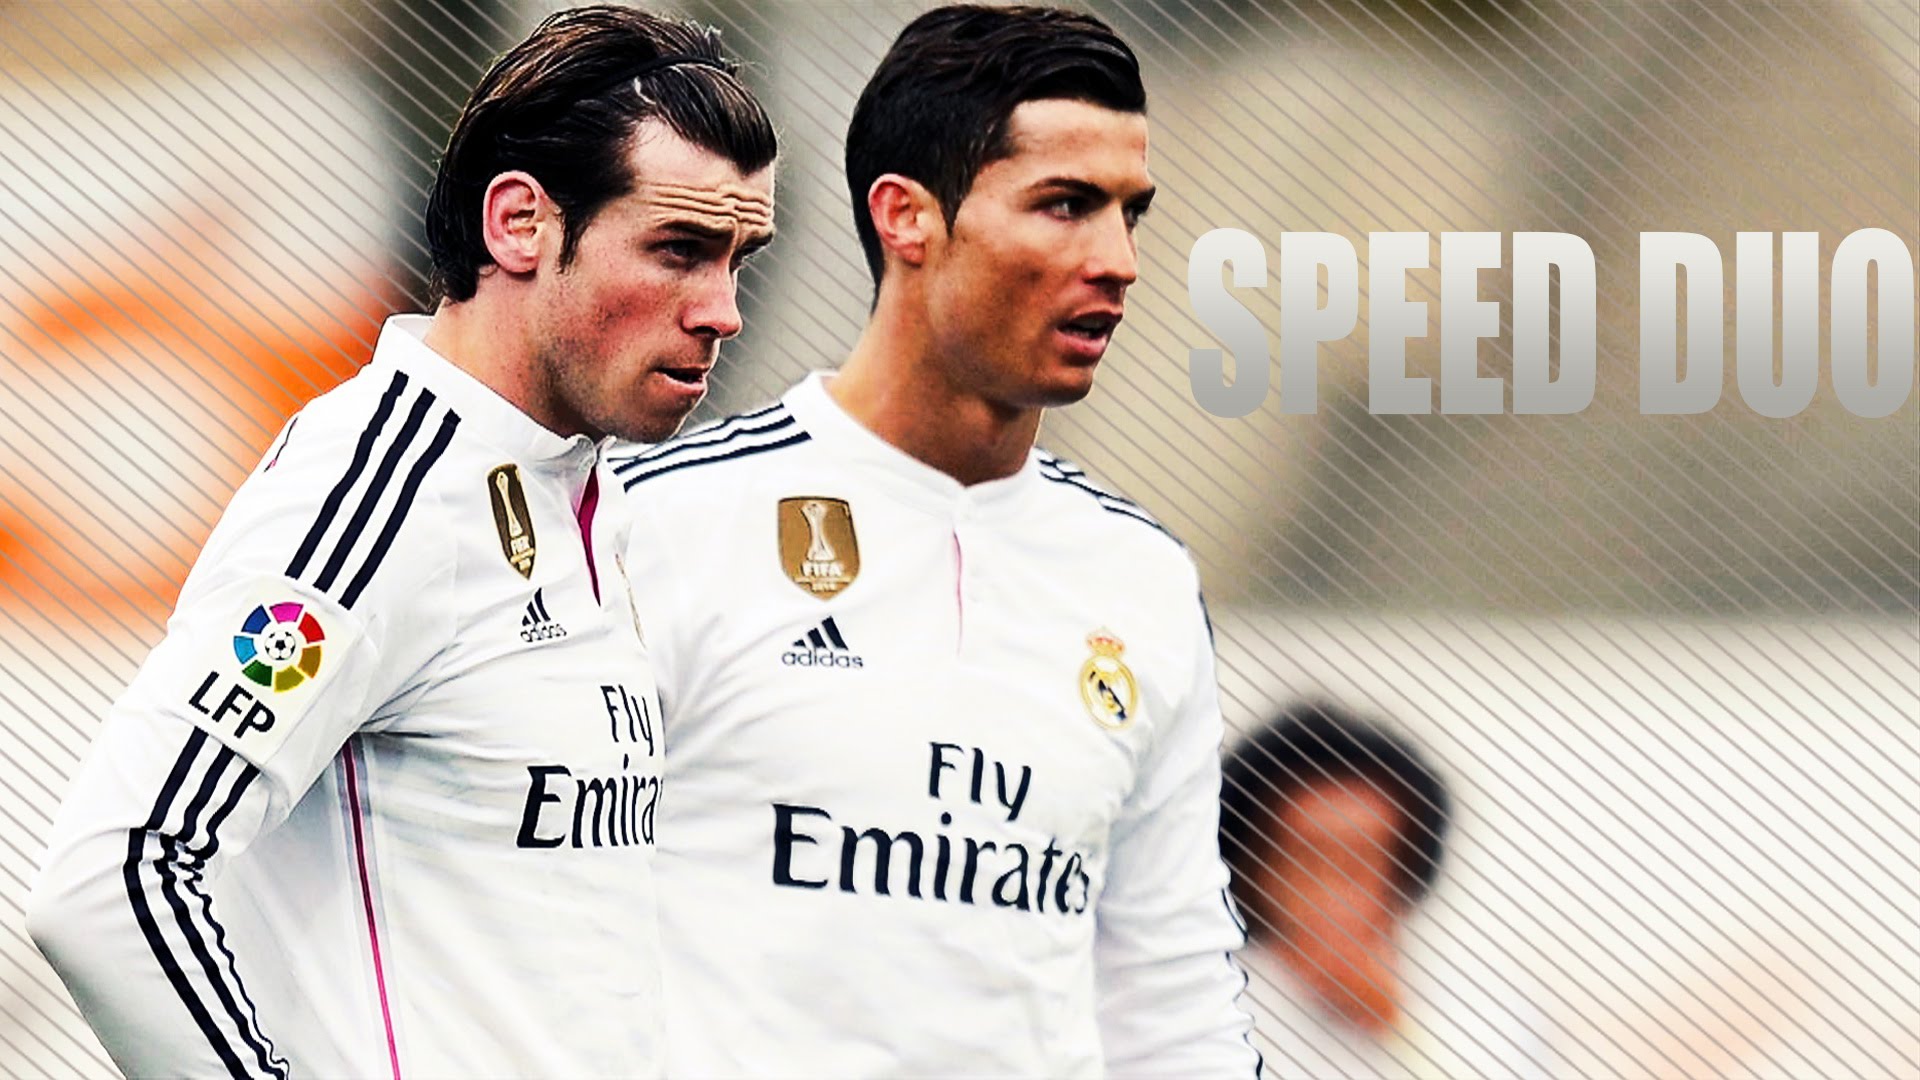 Gareth Bale And Cristiano Ronaldo Wallpaper